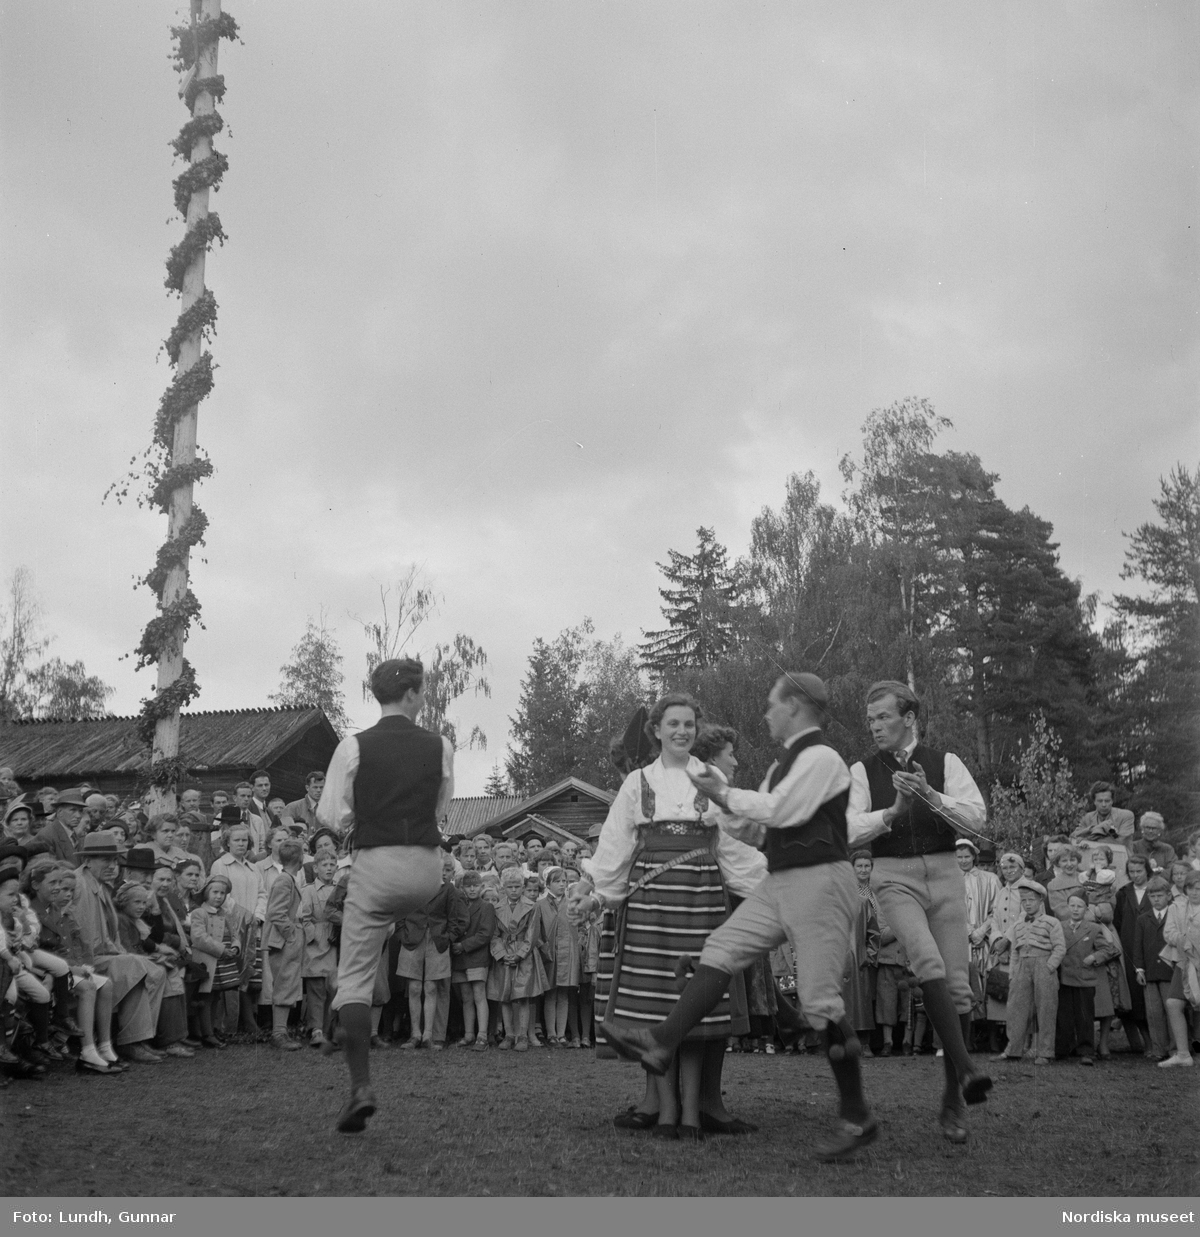 Motiv: (ingen anteckning) ;
Kvinnor och män i folkdräkt dansar vid en midsommarstång inför en publik vid midsommarfirande, tre hästskulpturer 2Jemt-Olofs hästar" (träsnidaren Jemt Olov Persson), porträtt av en man som står vid en husvägg, porträtt av en kvinna som står på en balkong.